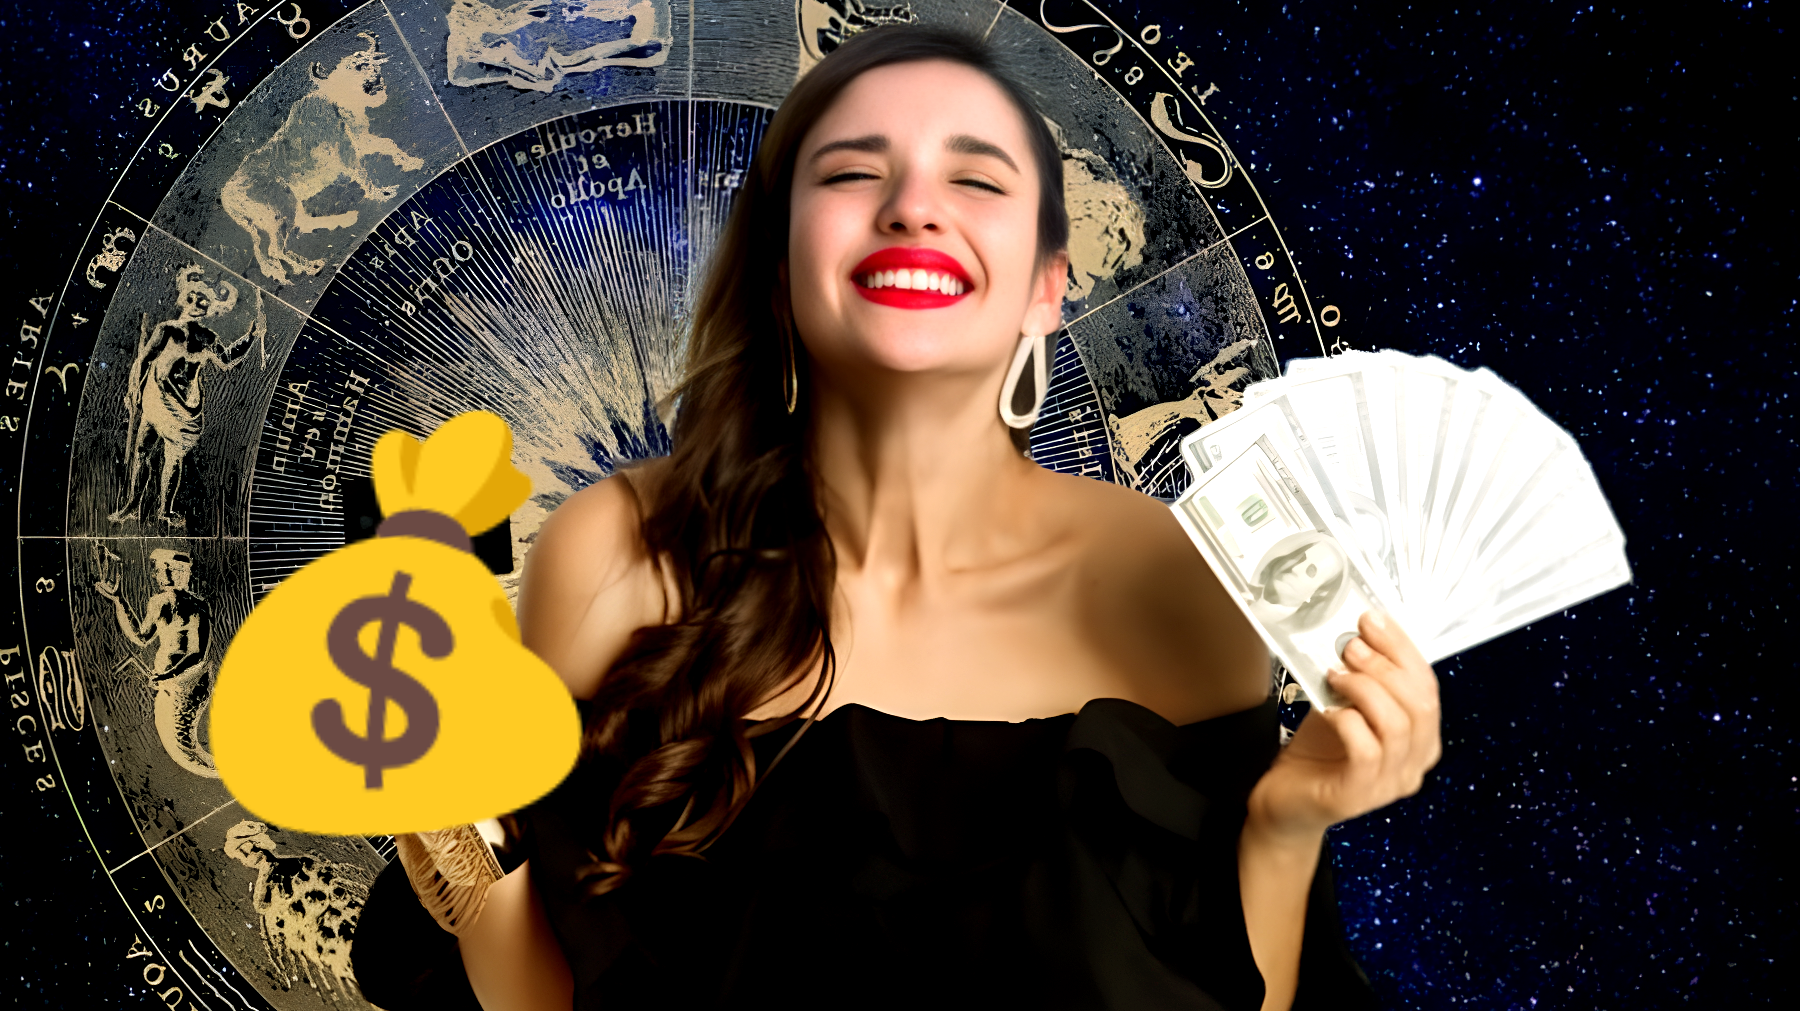 La astrología señala una lluvia de fortuna: descubre los signos que se llenarán de dinero pronto